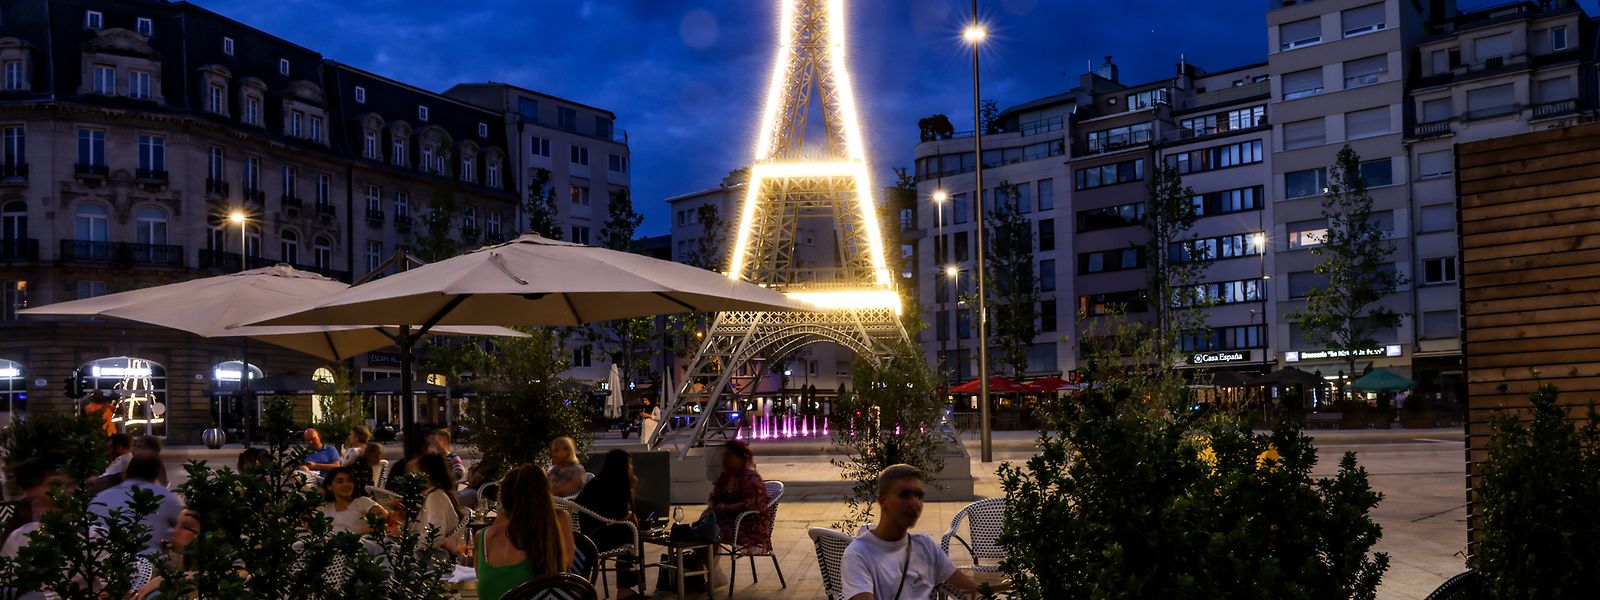 Einen Kaffee mit Croissant und Blick auf den Eiffelturm, das gibt es nur in Paris – oder in Luxemburg-Stadt.